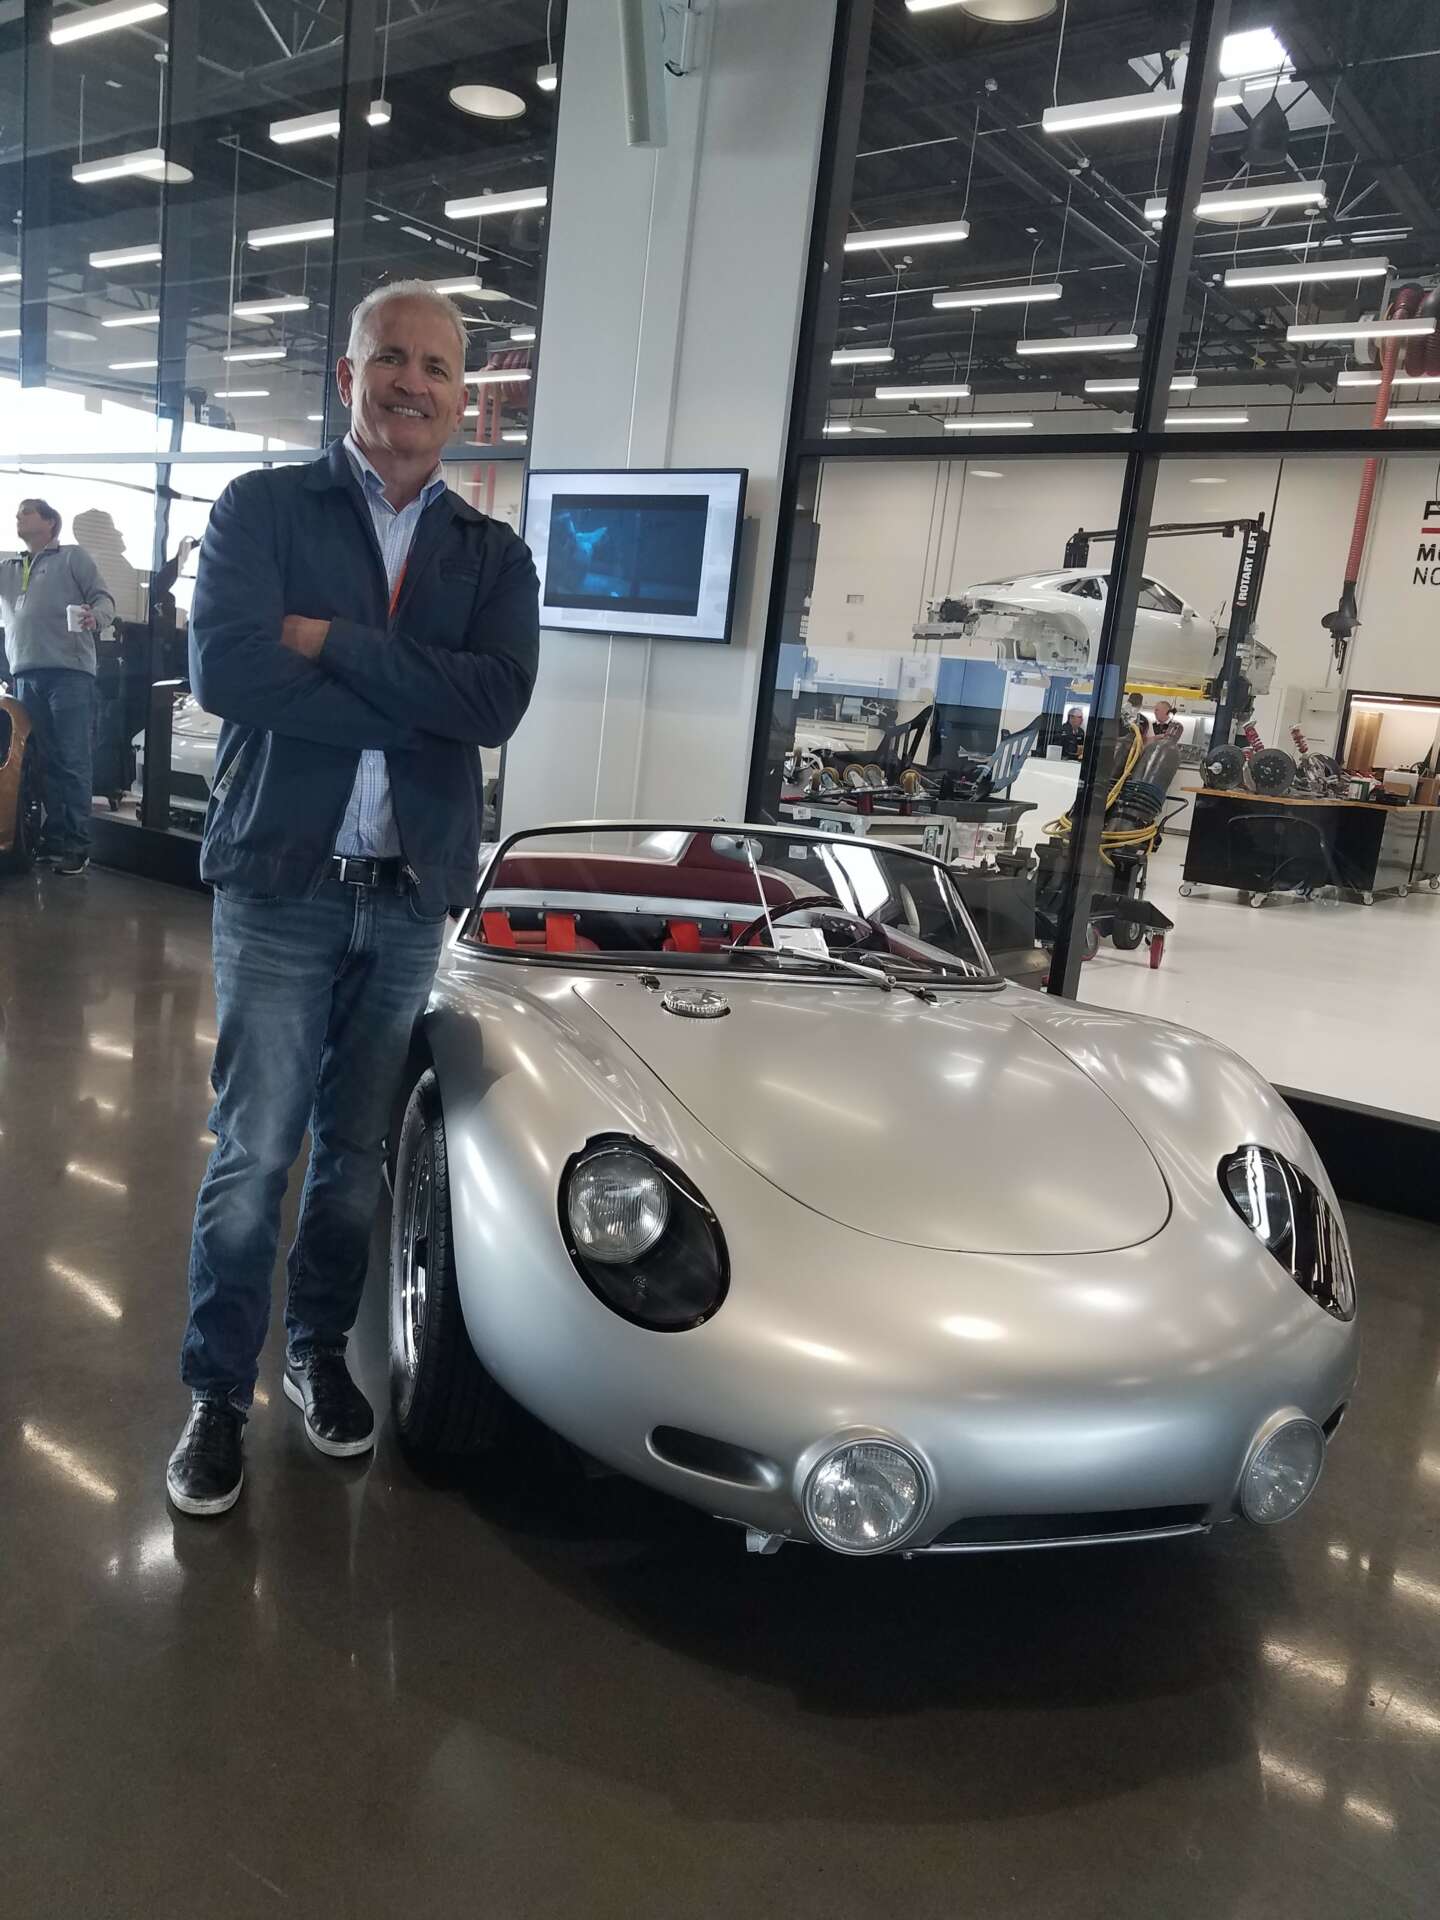 Dean Morash next to a Porsche race car at the Porsche Experience